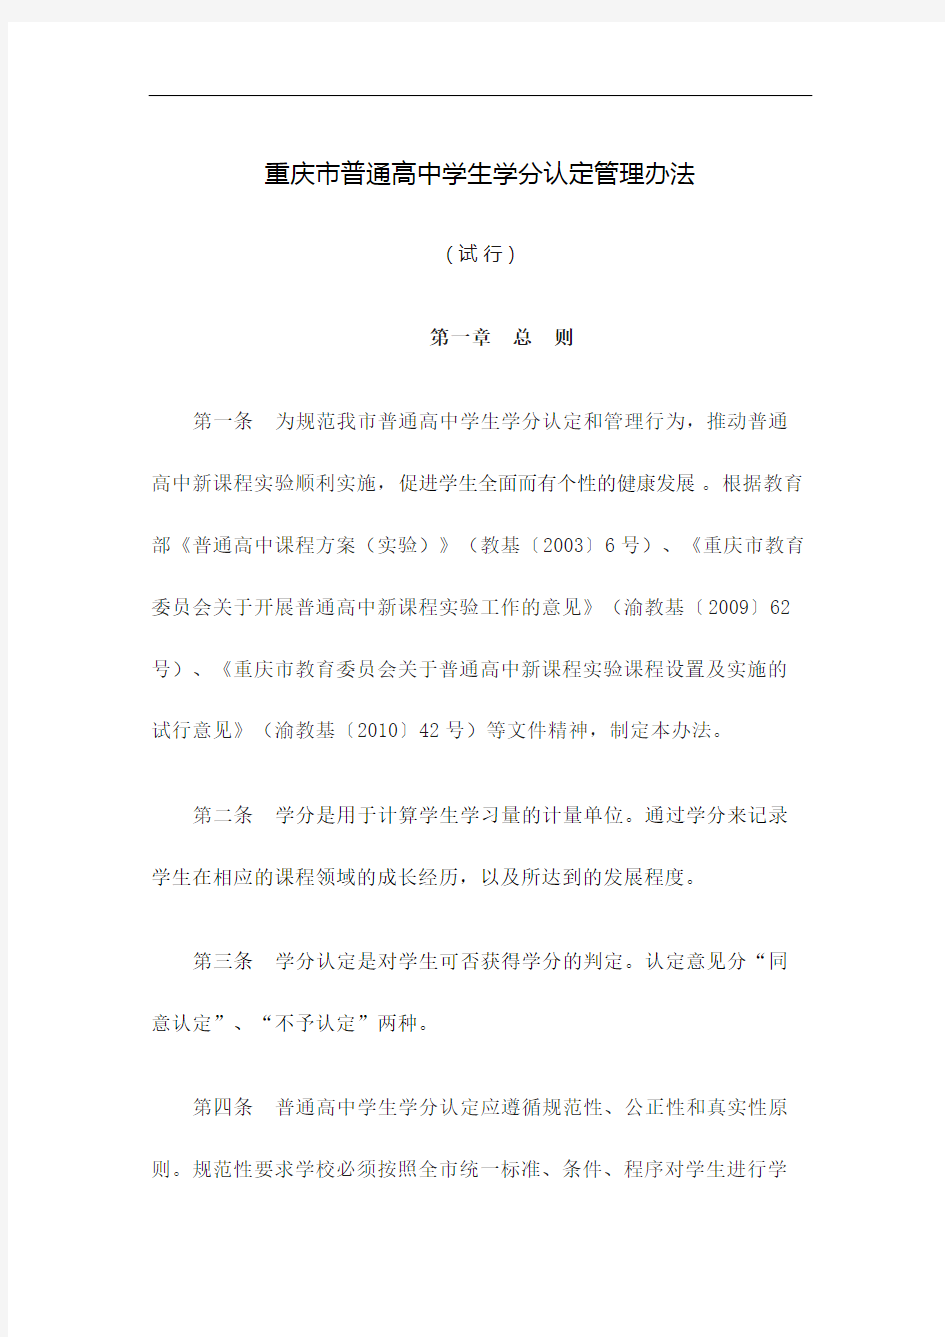 重庆市普通高中学生学分认定管理规定